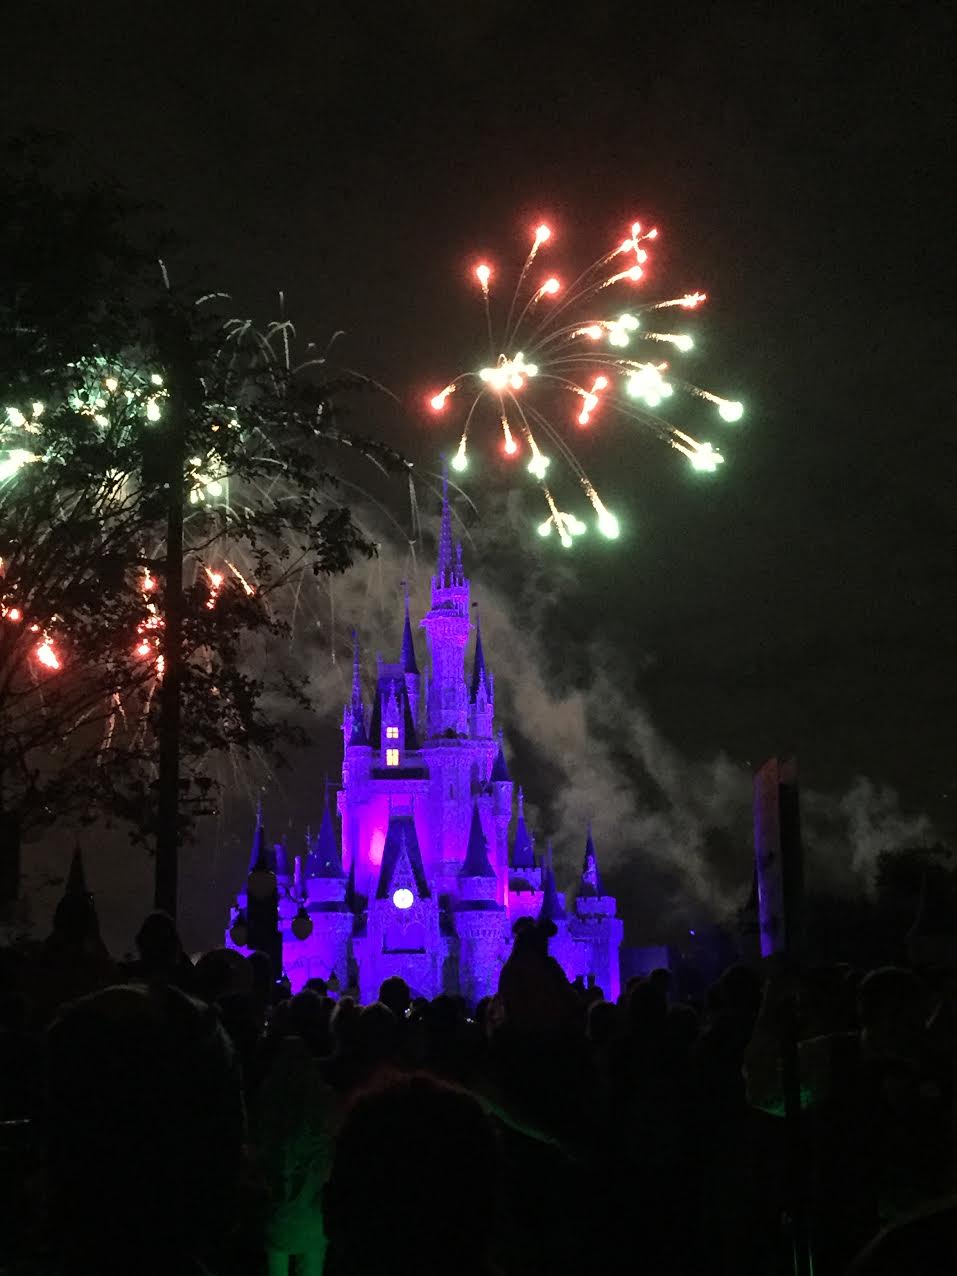 Fireworks over Cinderella's castle